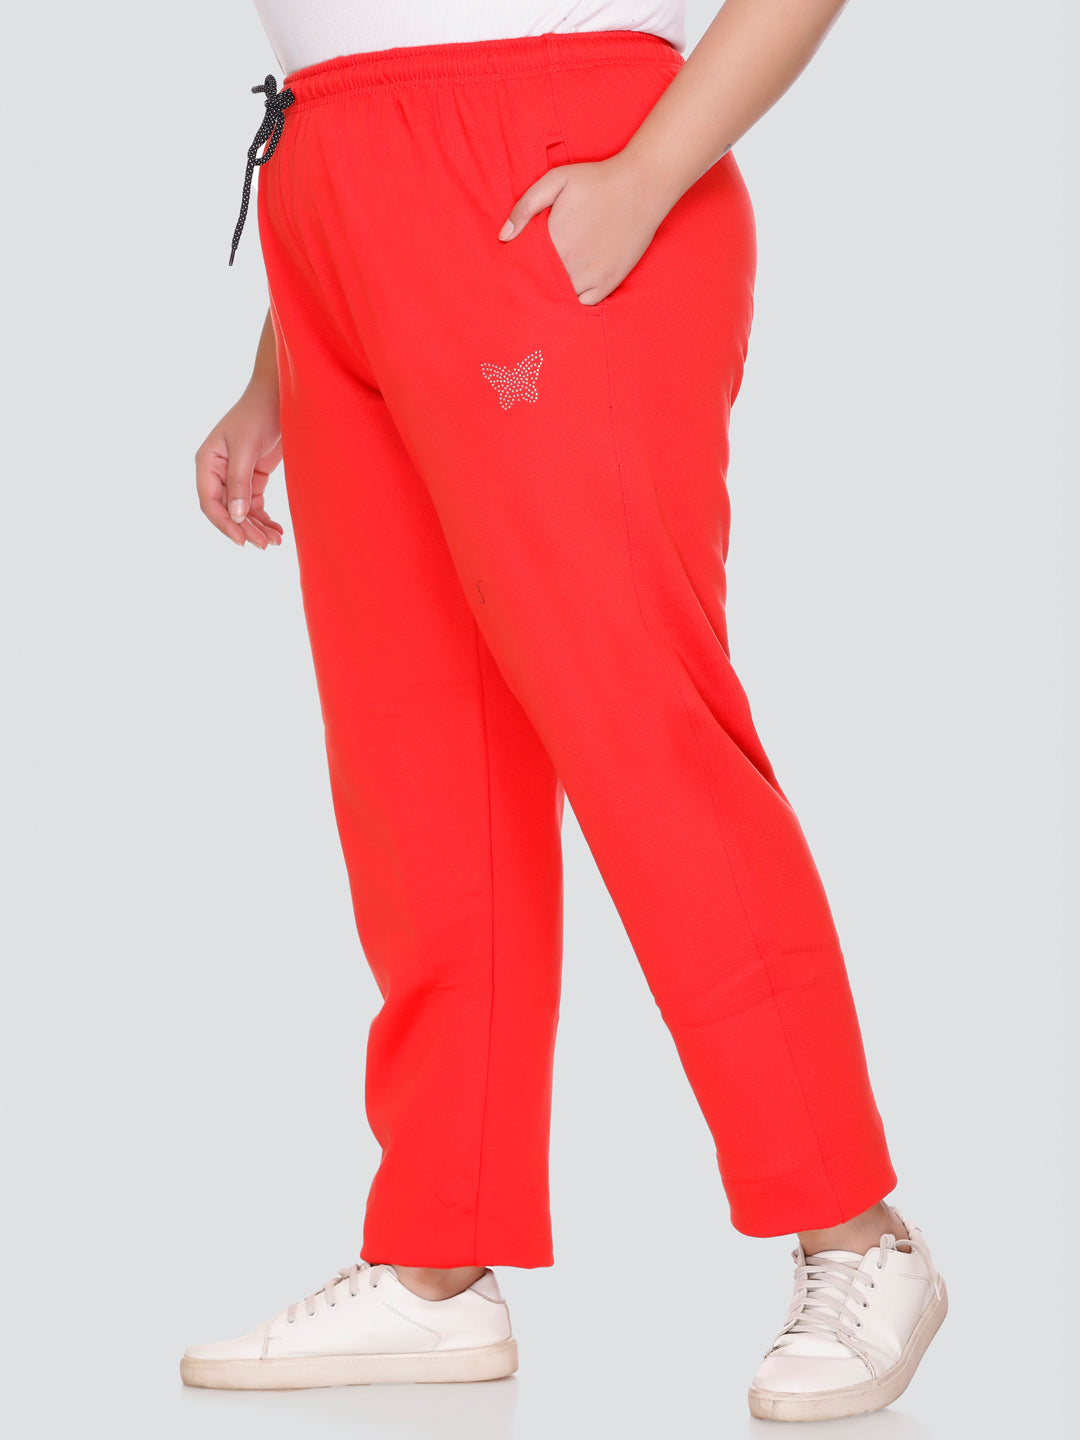 Buy Winter Cotton Wear Fleece Red Track pants/Lowers for Women